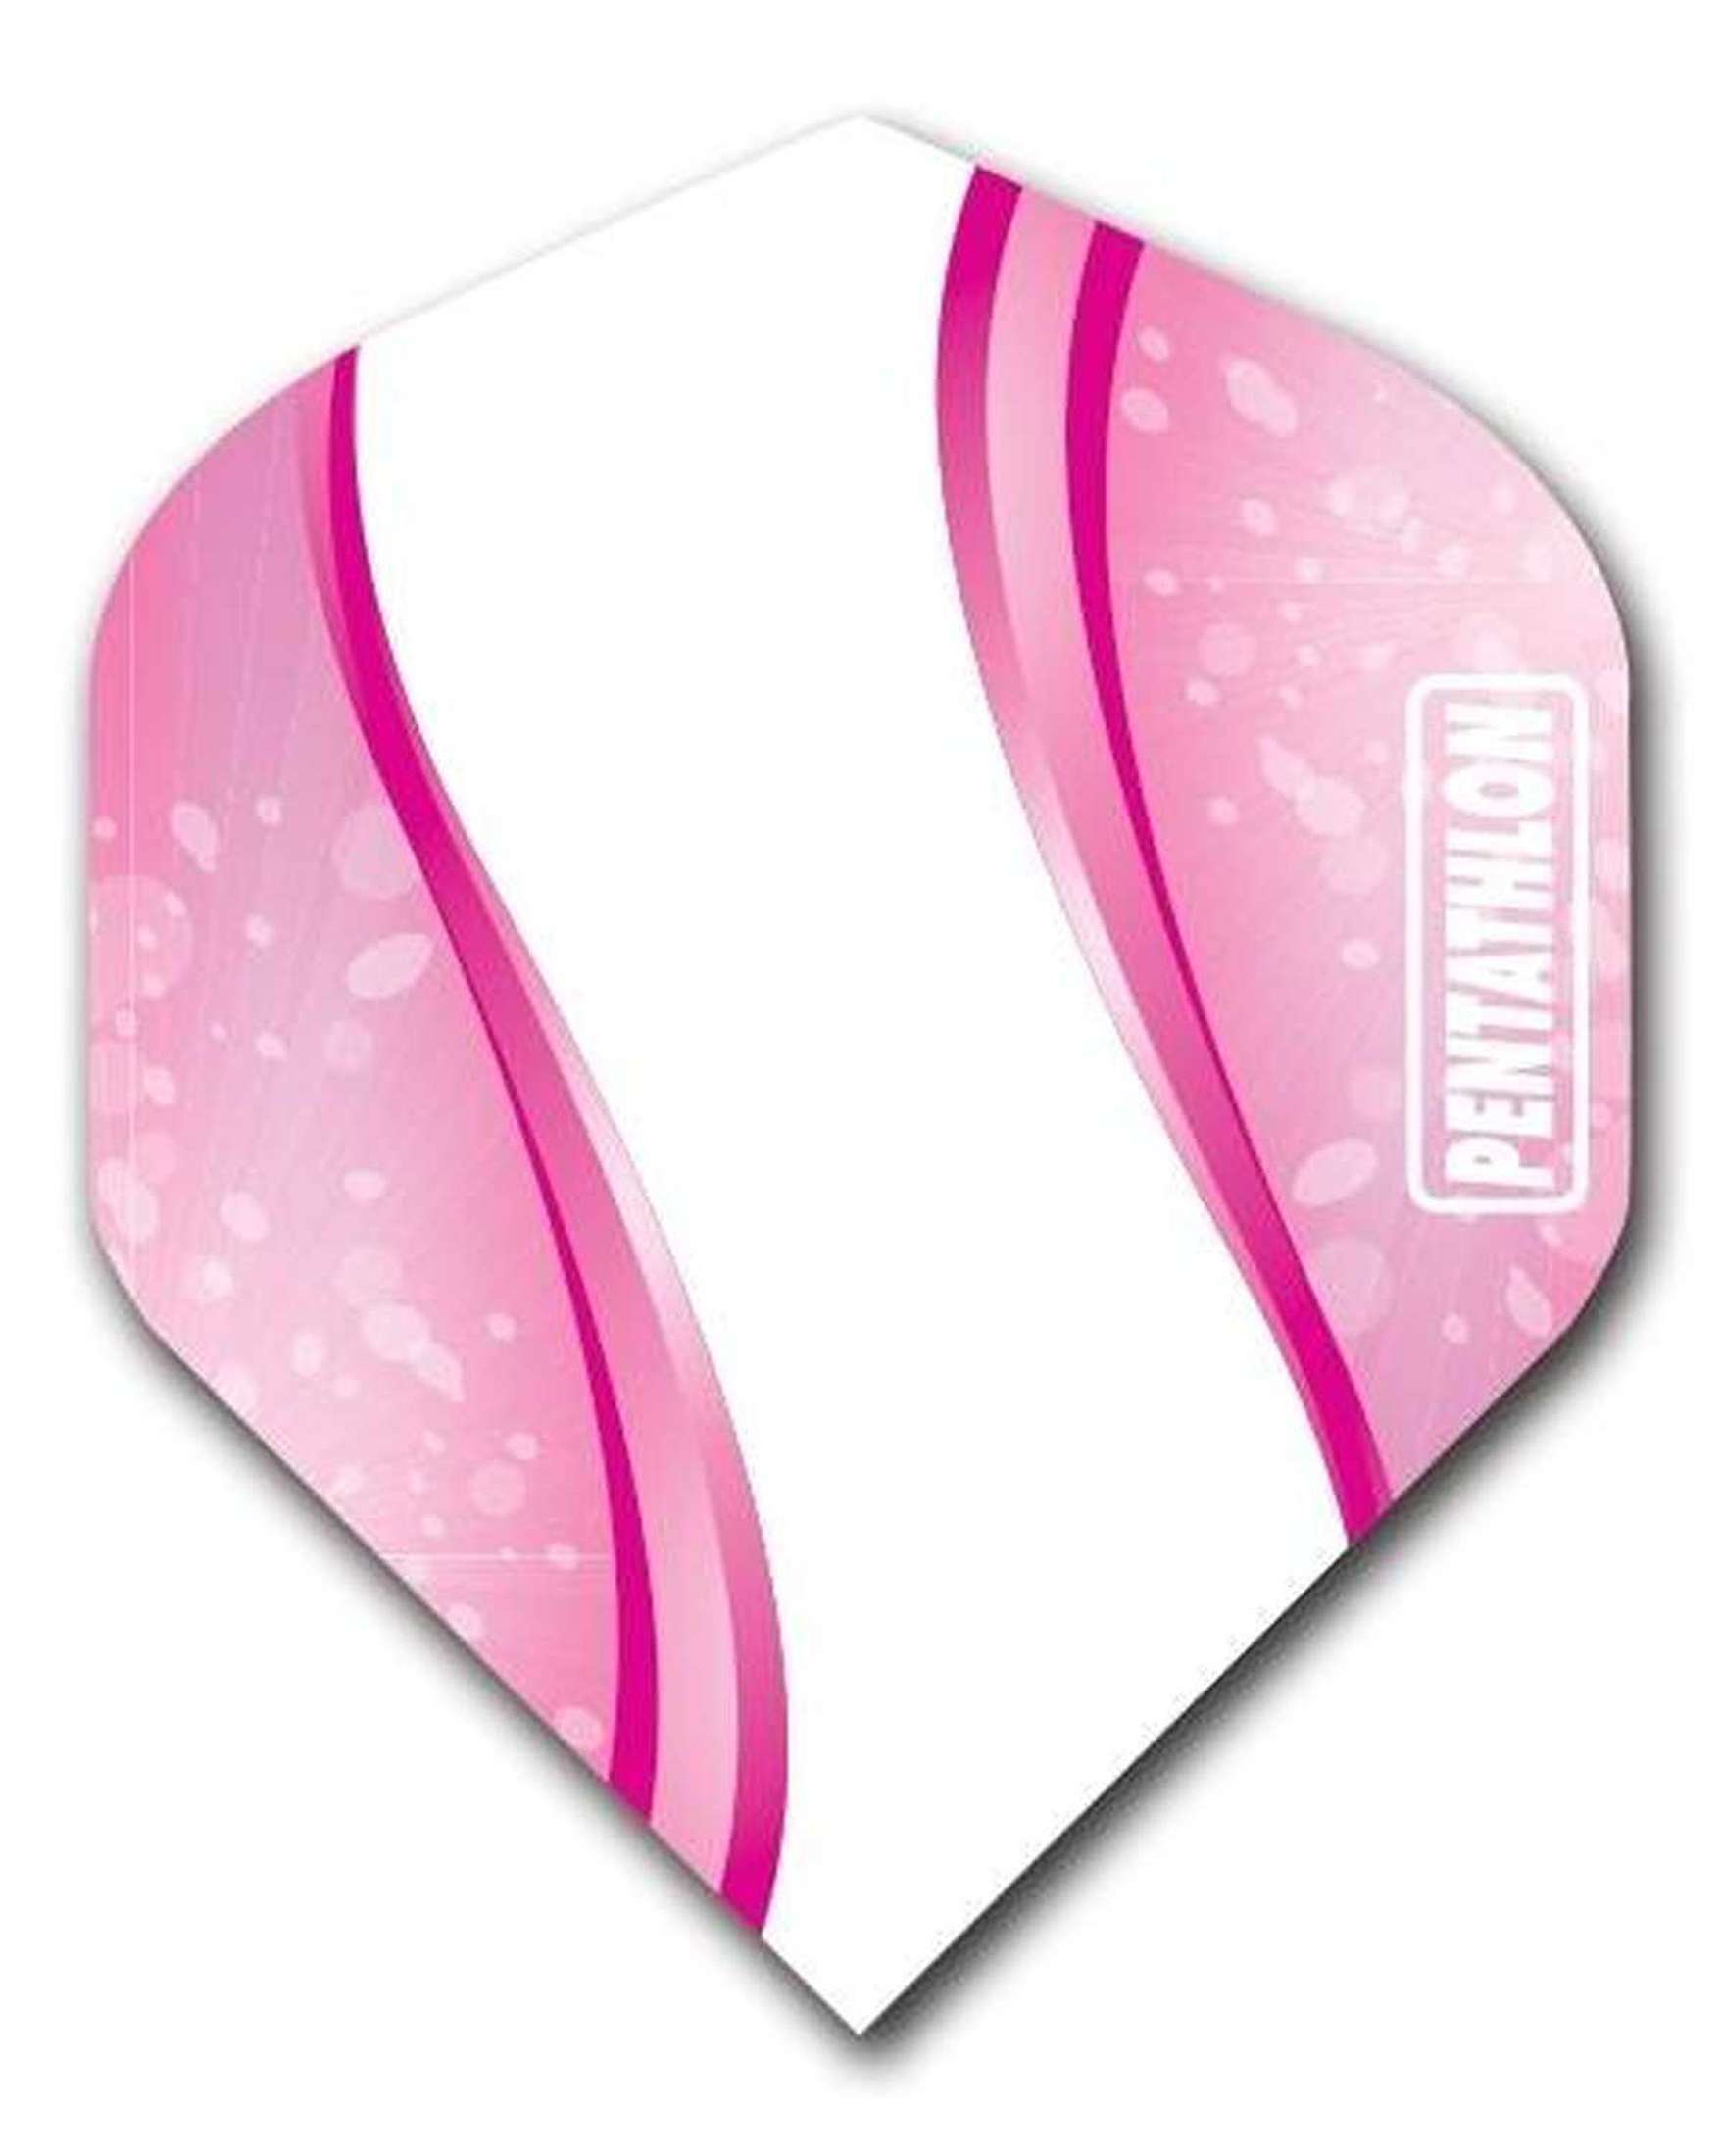 Pentathlon New Design 3 Pink Flights-1